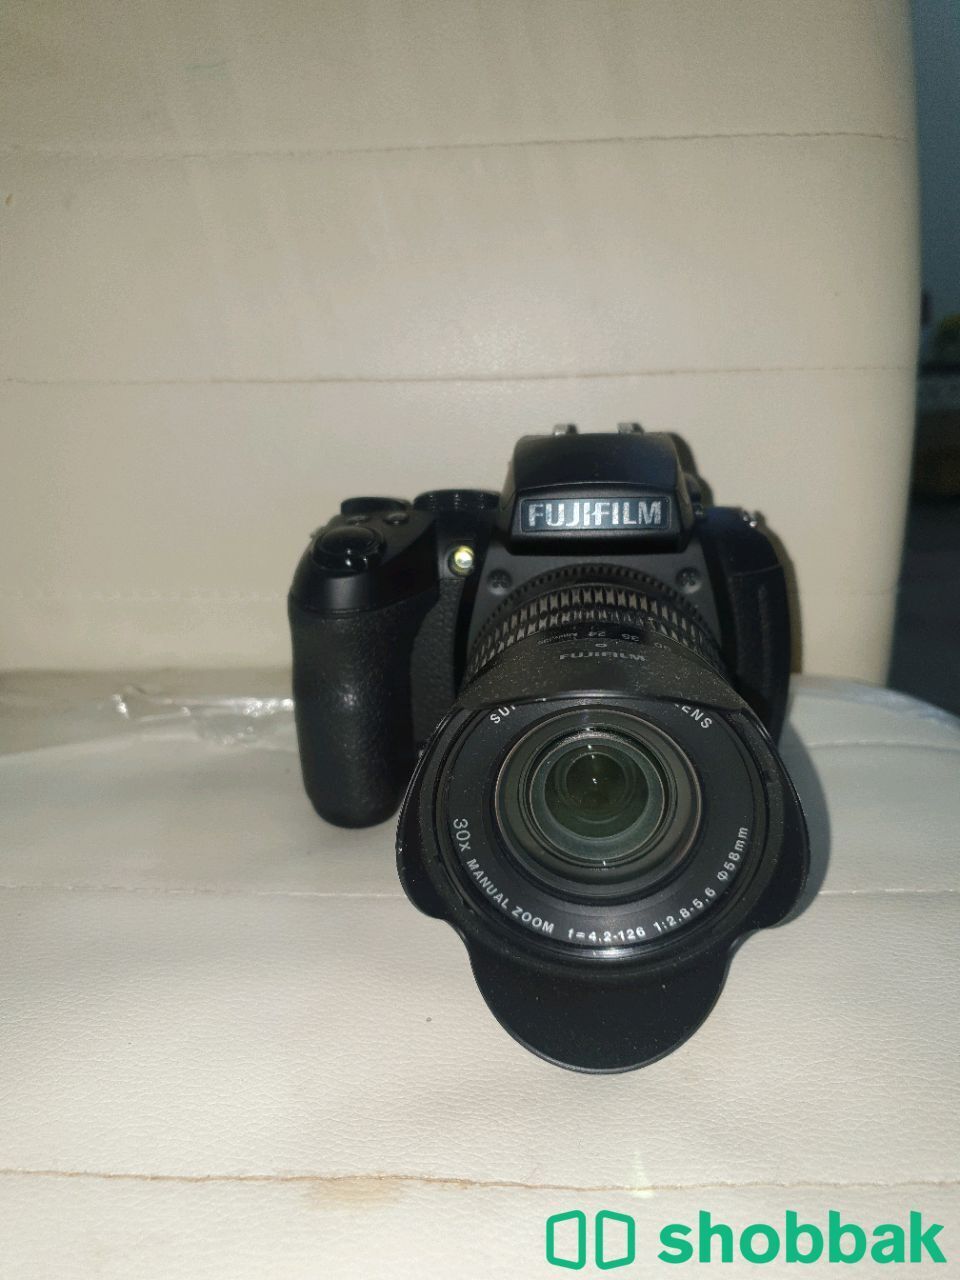 كاميرا رخيص للبيع Shobbak Saudi Arabia